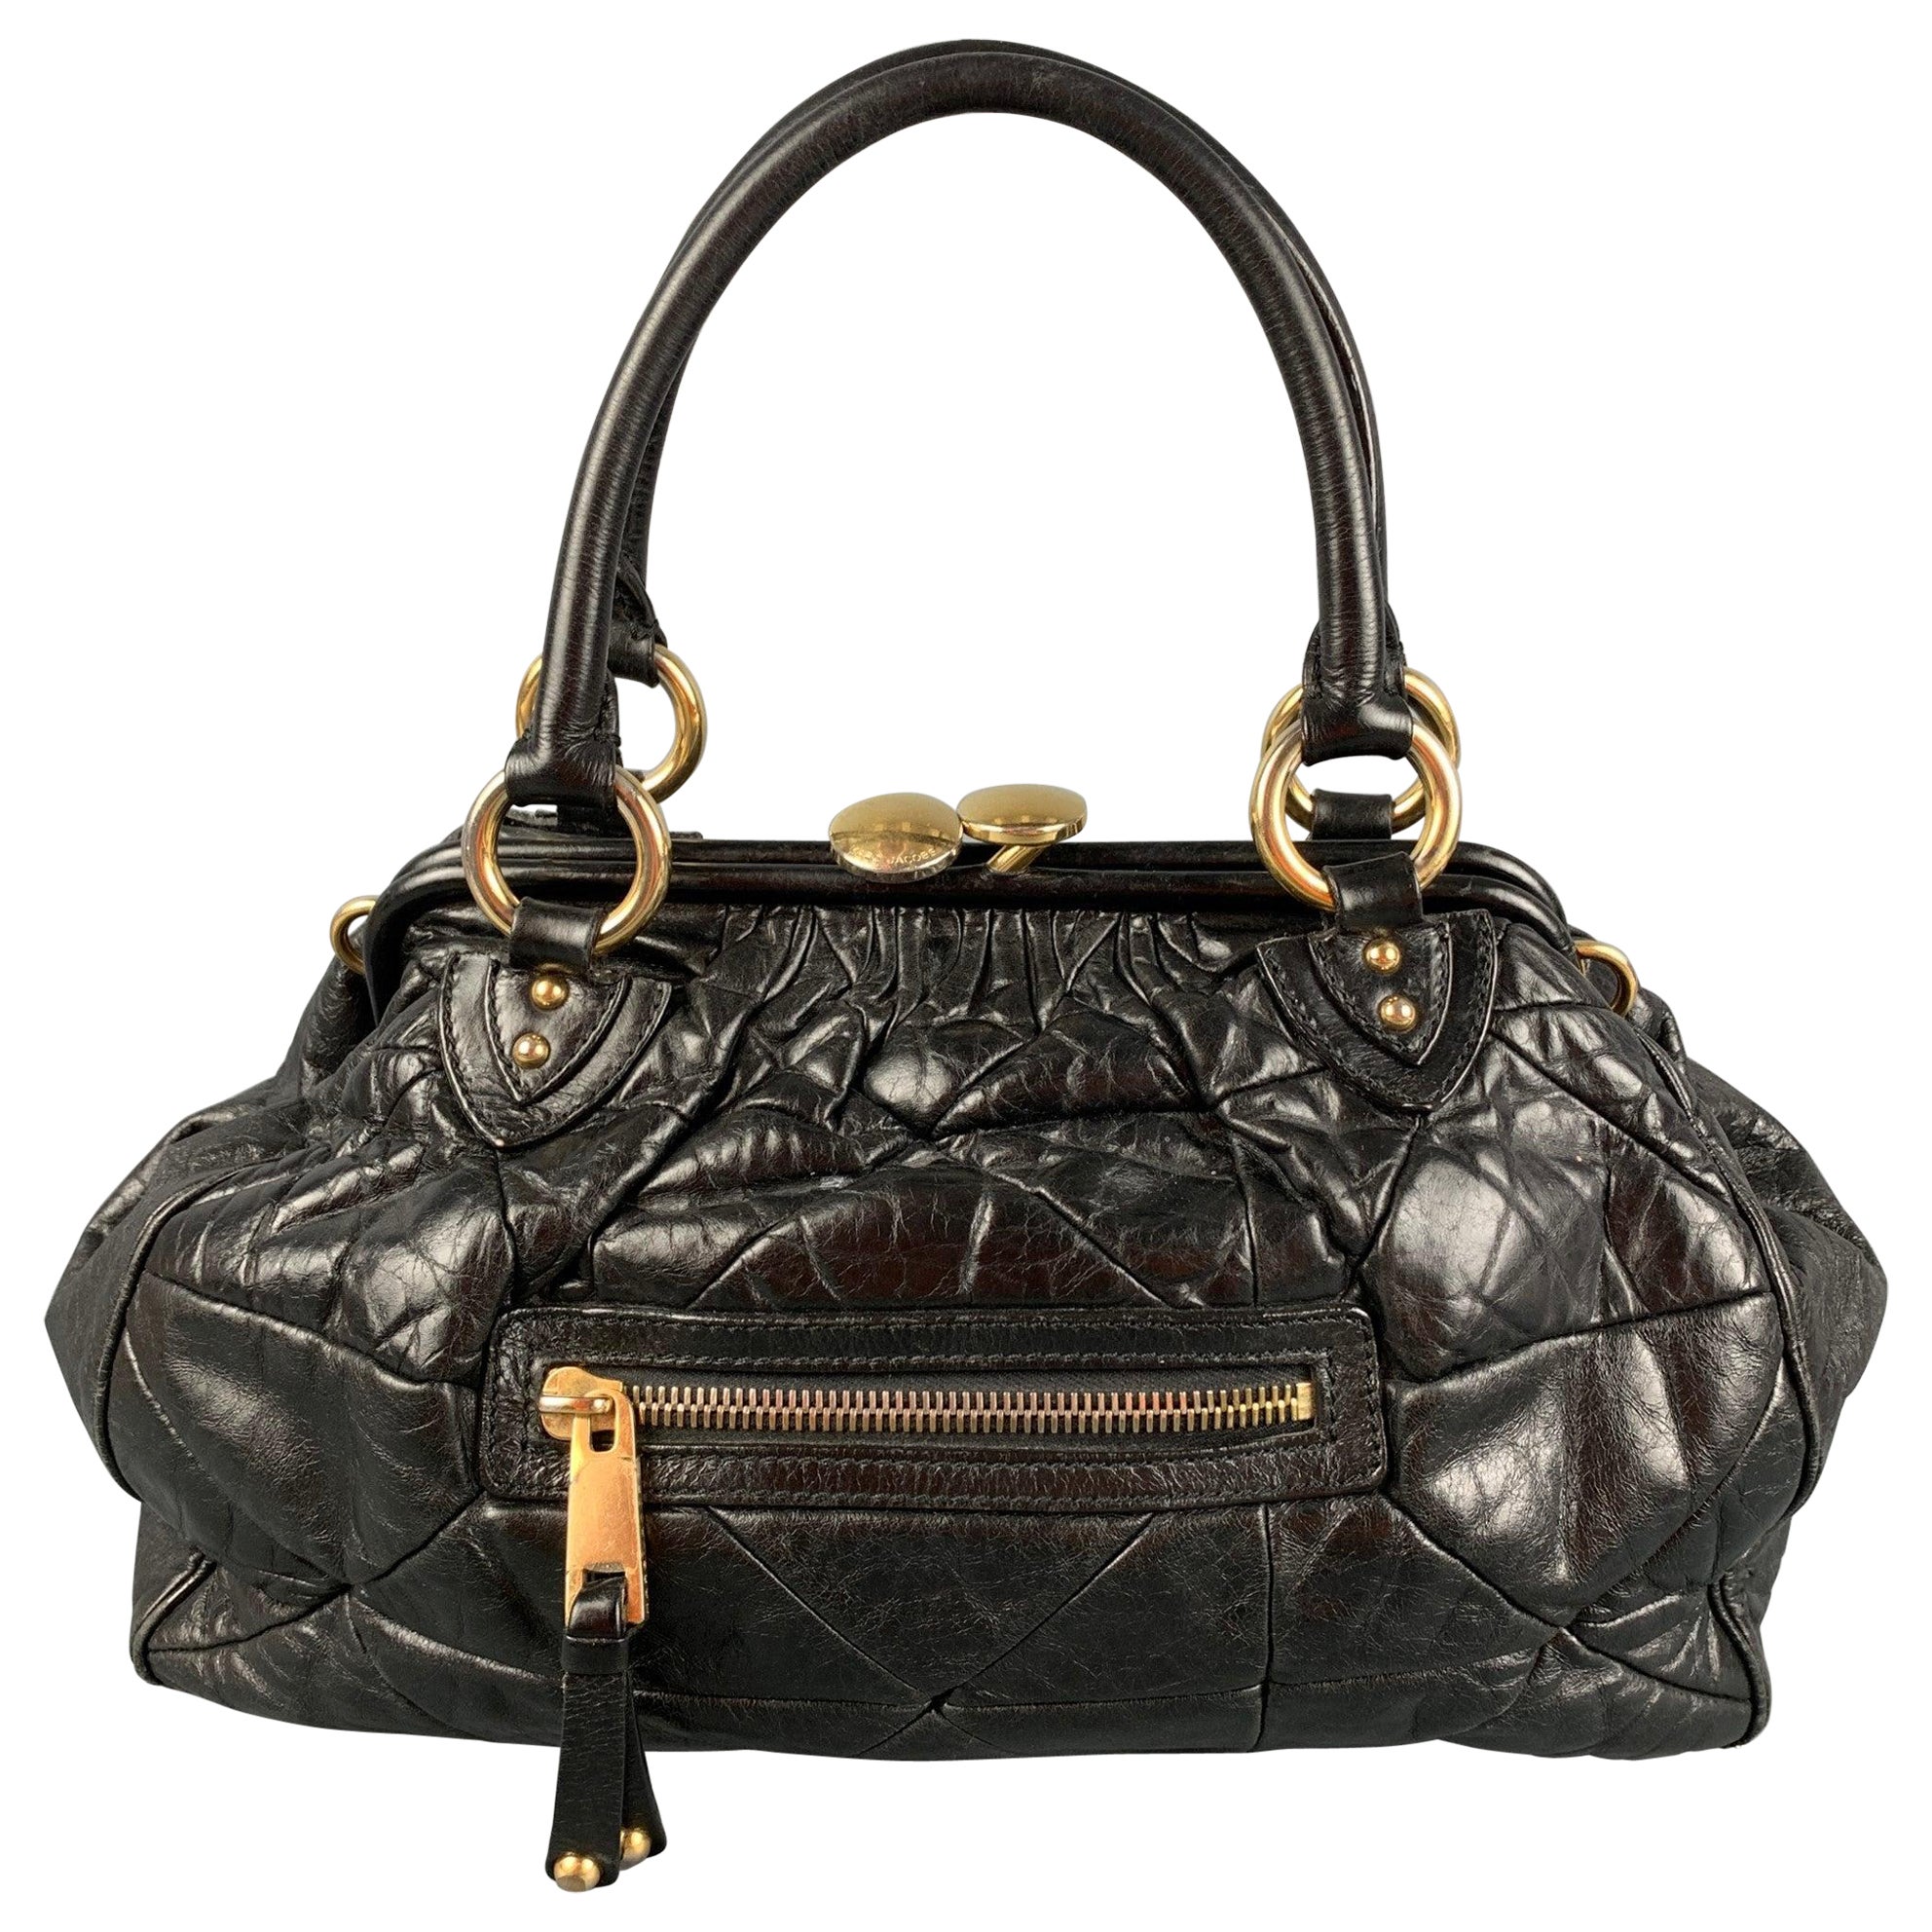 MARC JACOBS Black Quilted Leather Satchel Stam Handbag For Sale